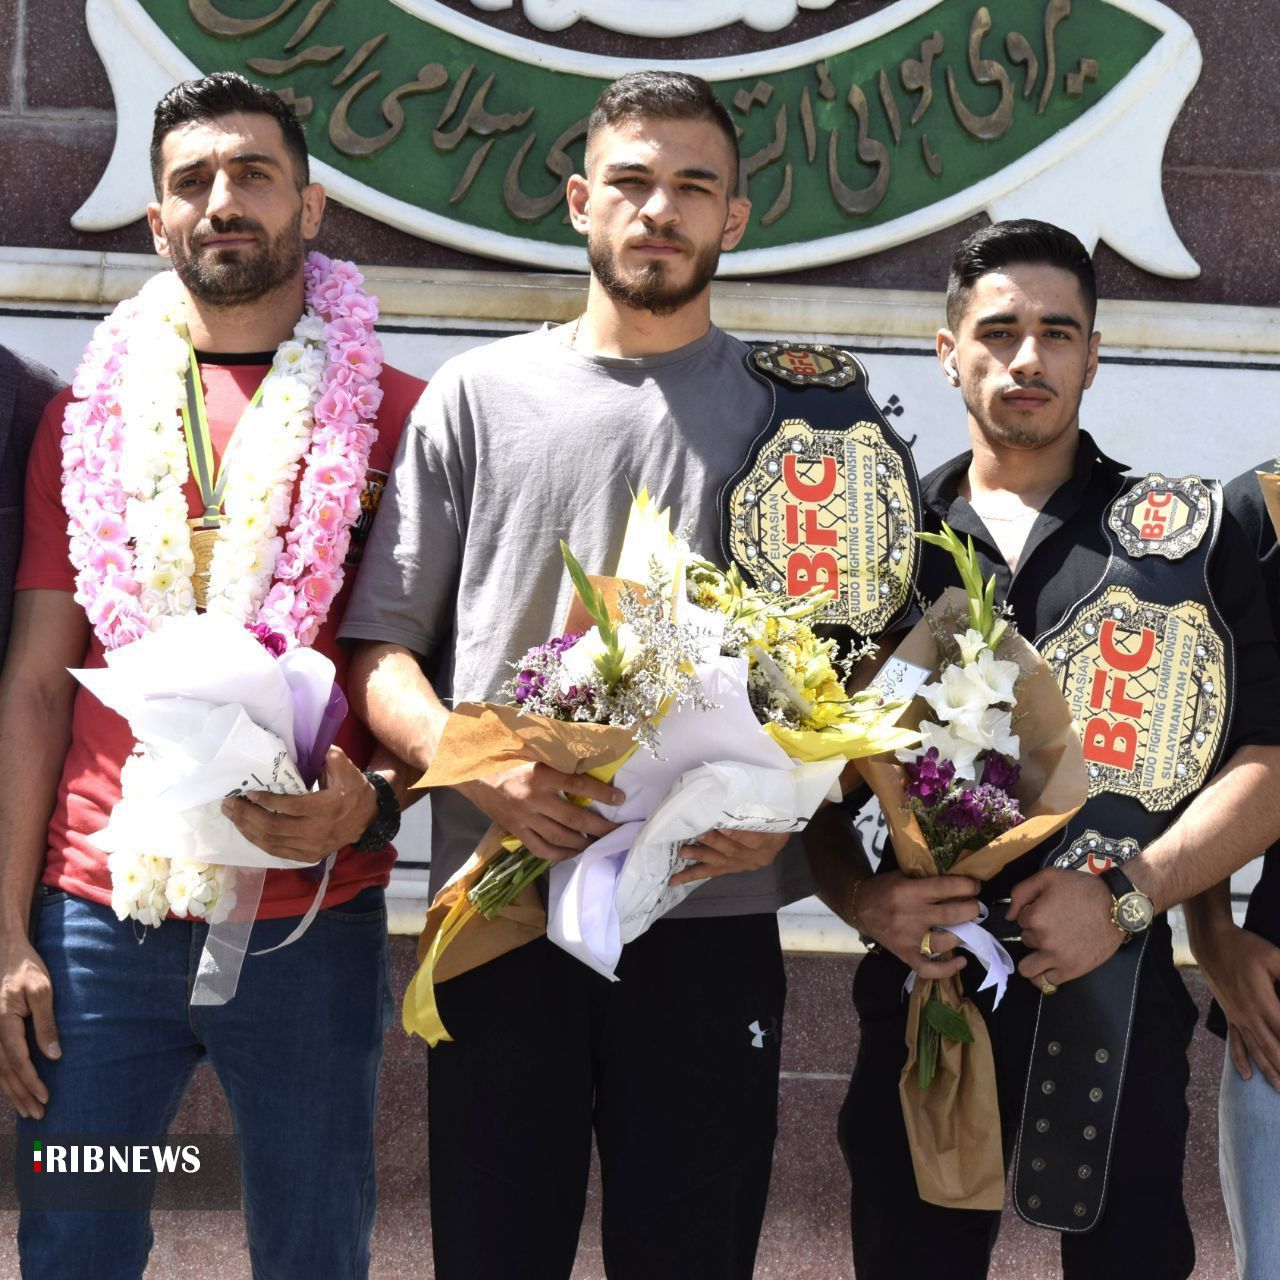 درخشش رزمی کاران مهابادی در مسابقات سلیمانیه عراق